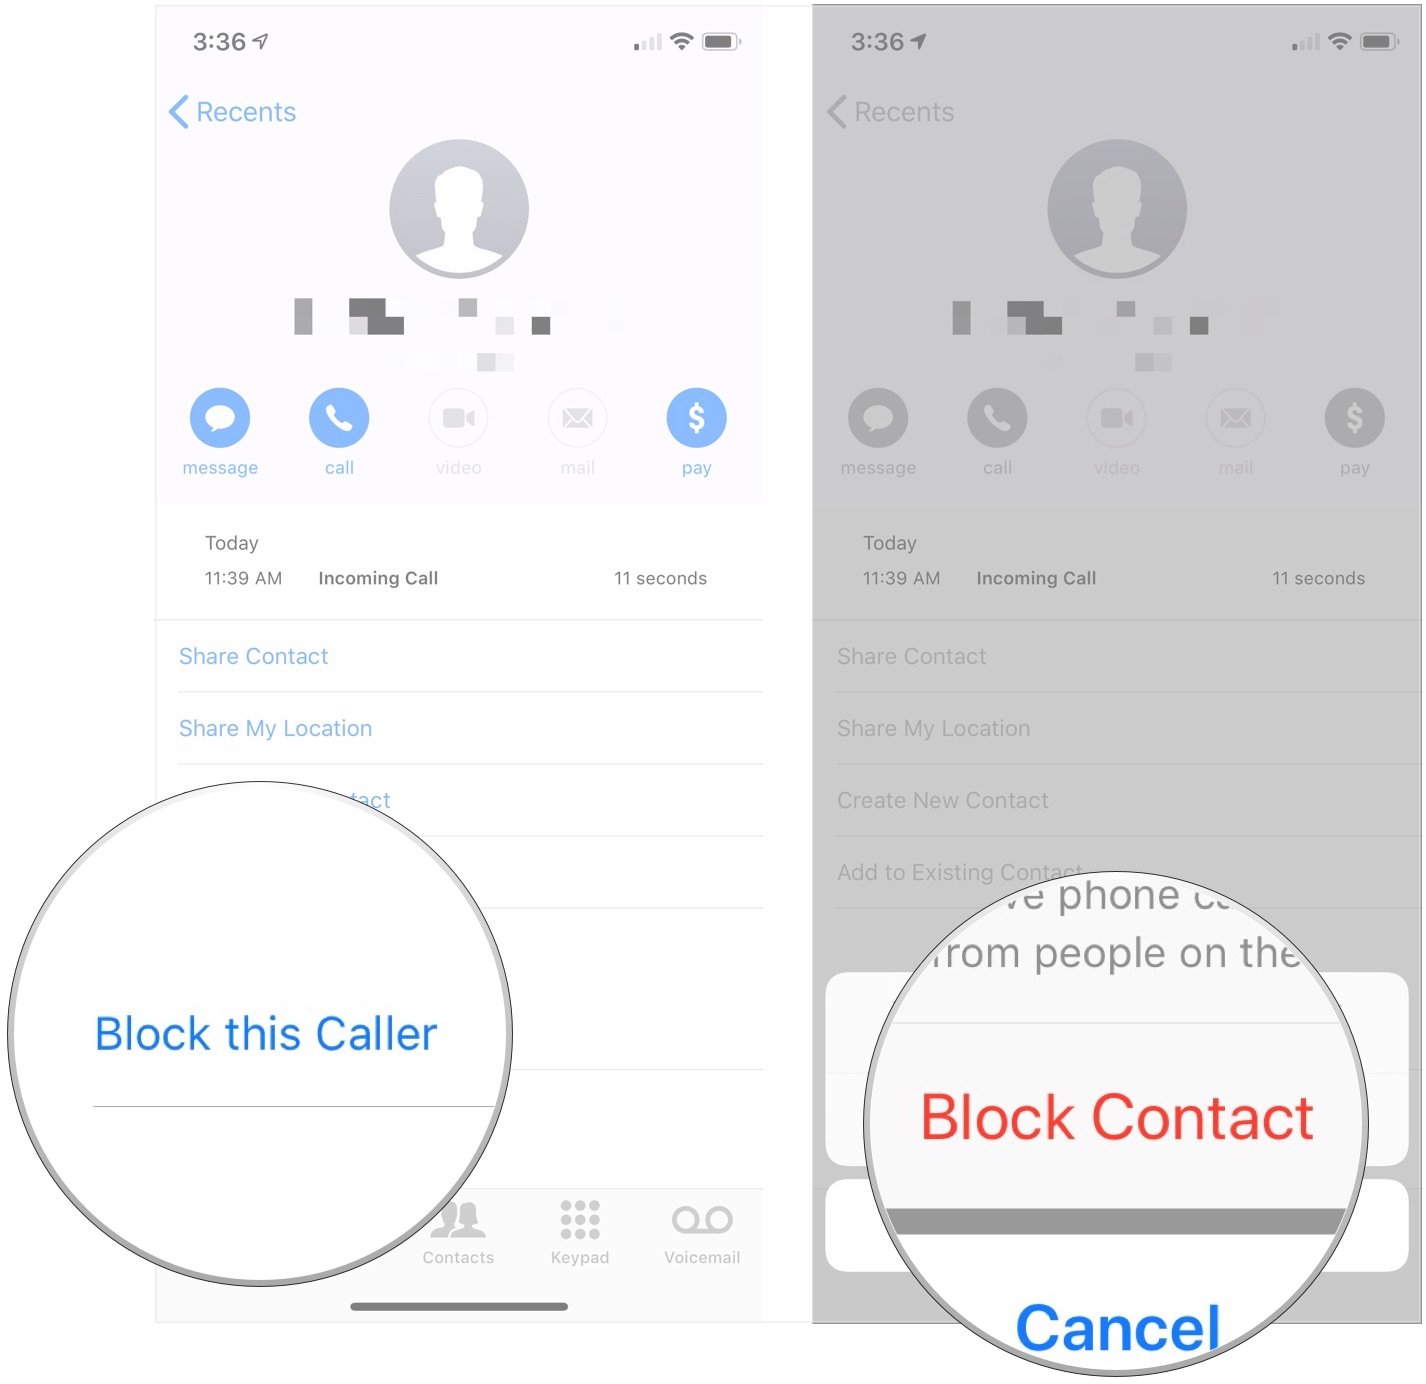 Tap Block this Caller, tap Block Contact